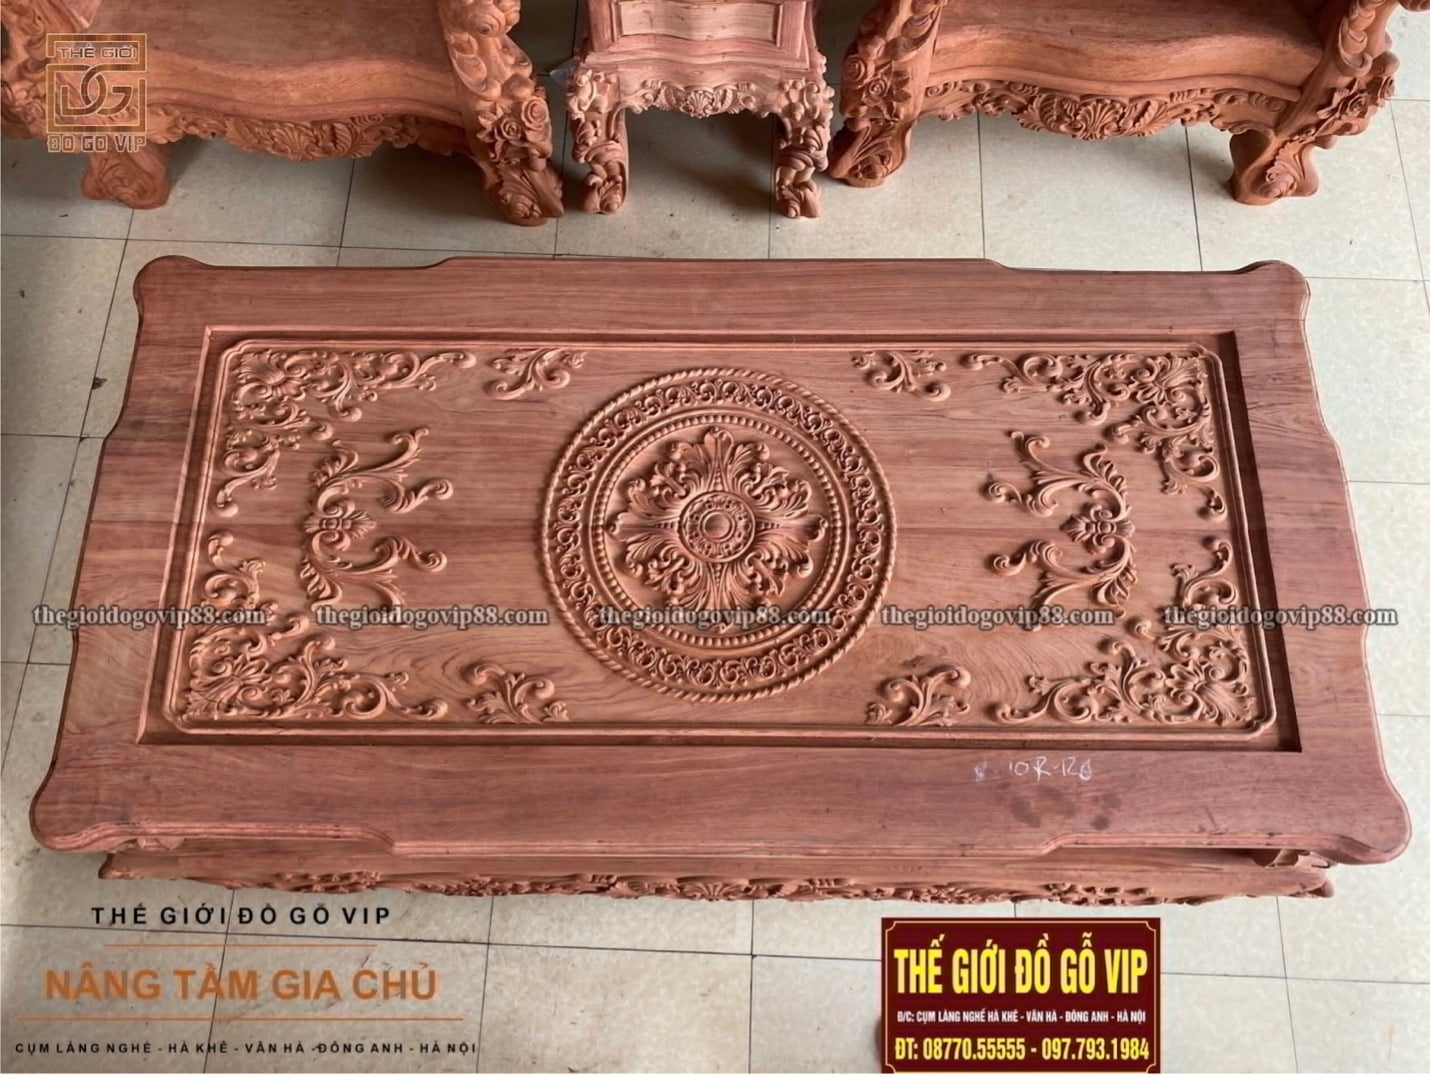 Mặt bàn của bộ bàn ghế sofa hoàng gia lá tây 10 món gỗ hương đá được chạm khắc tỉ mỉ